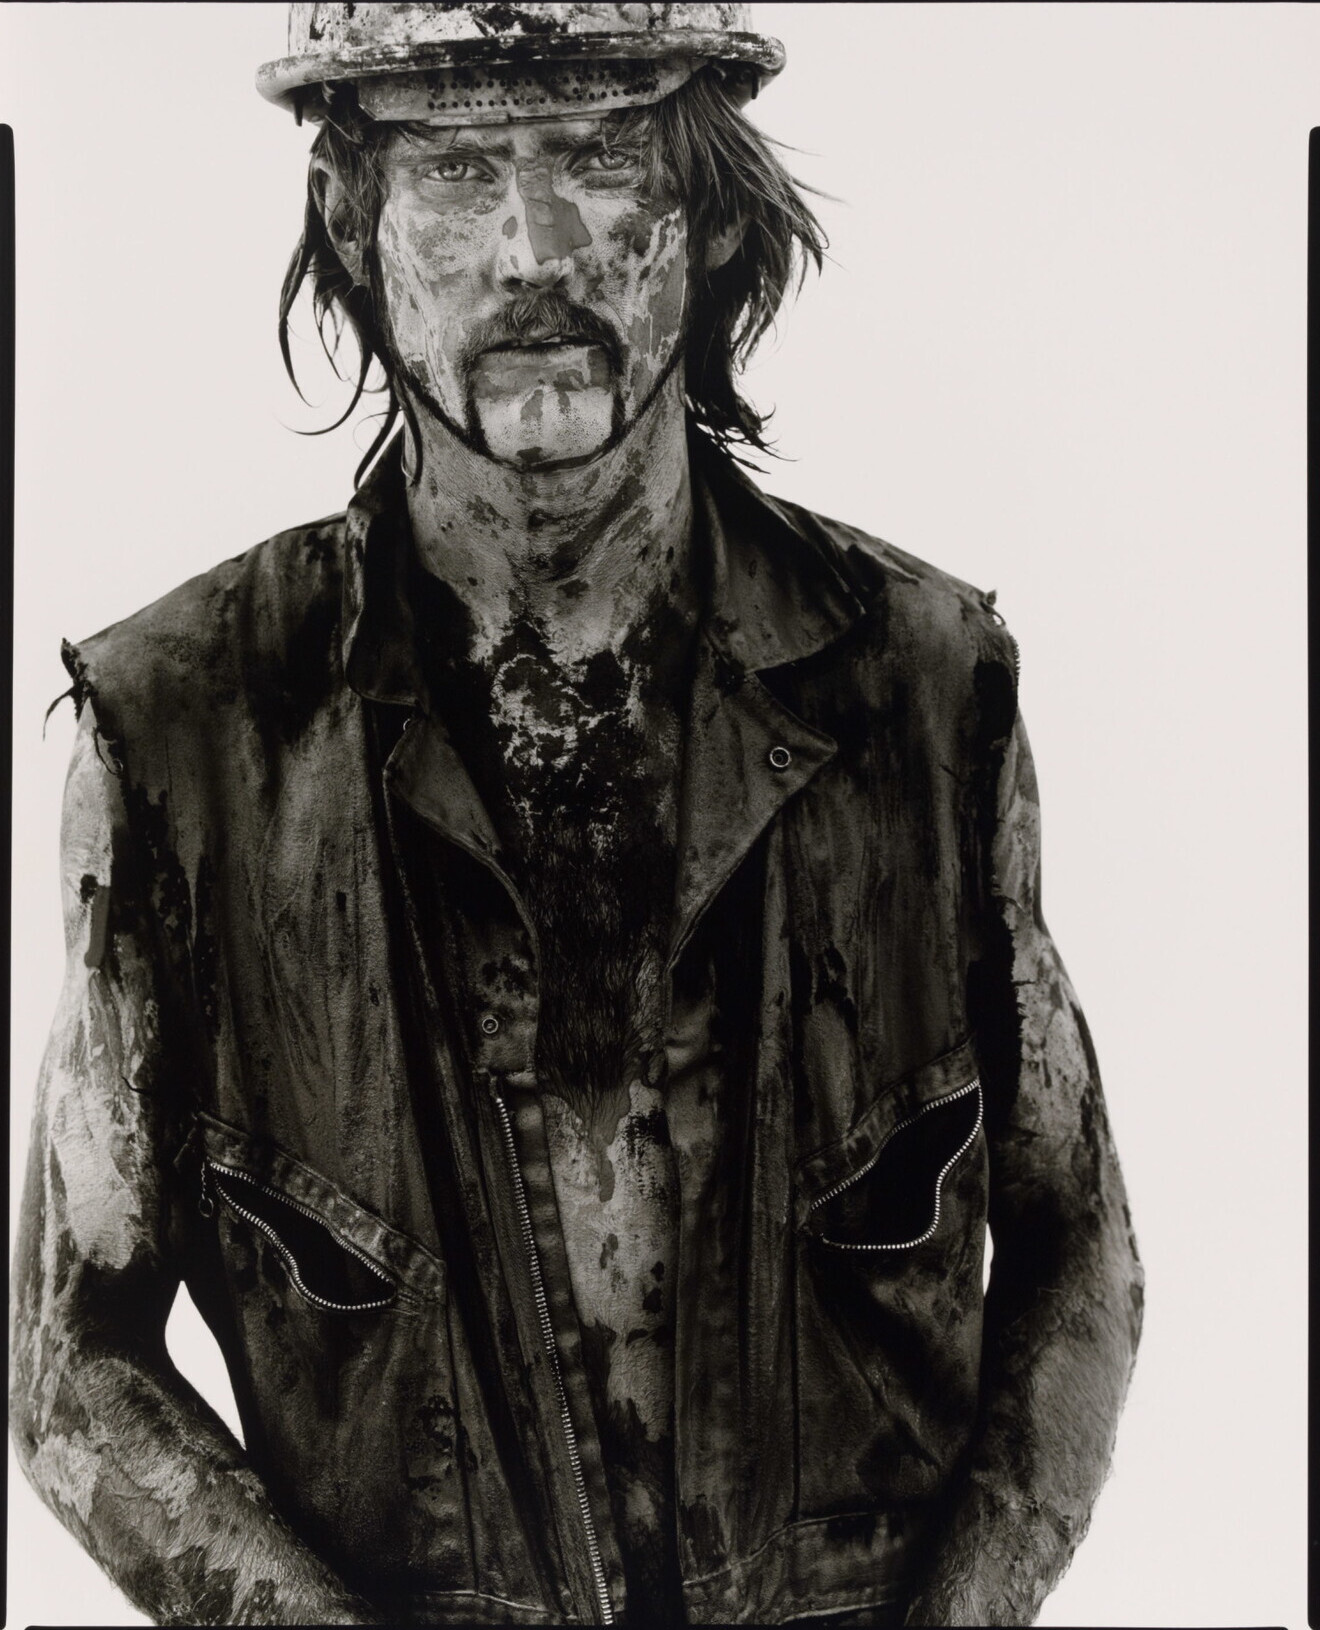 Том Страуд, нефтяник, Велма, Оклахома, 1980 г. Фотограф Ричард Аведон